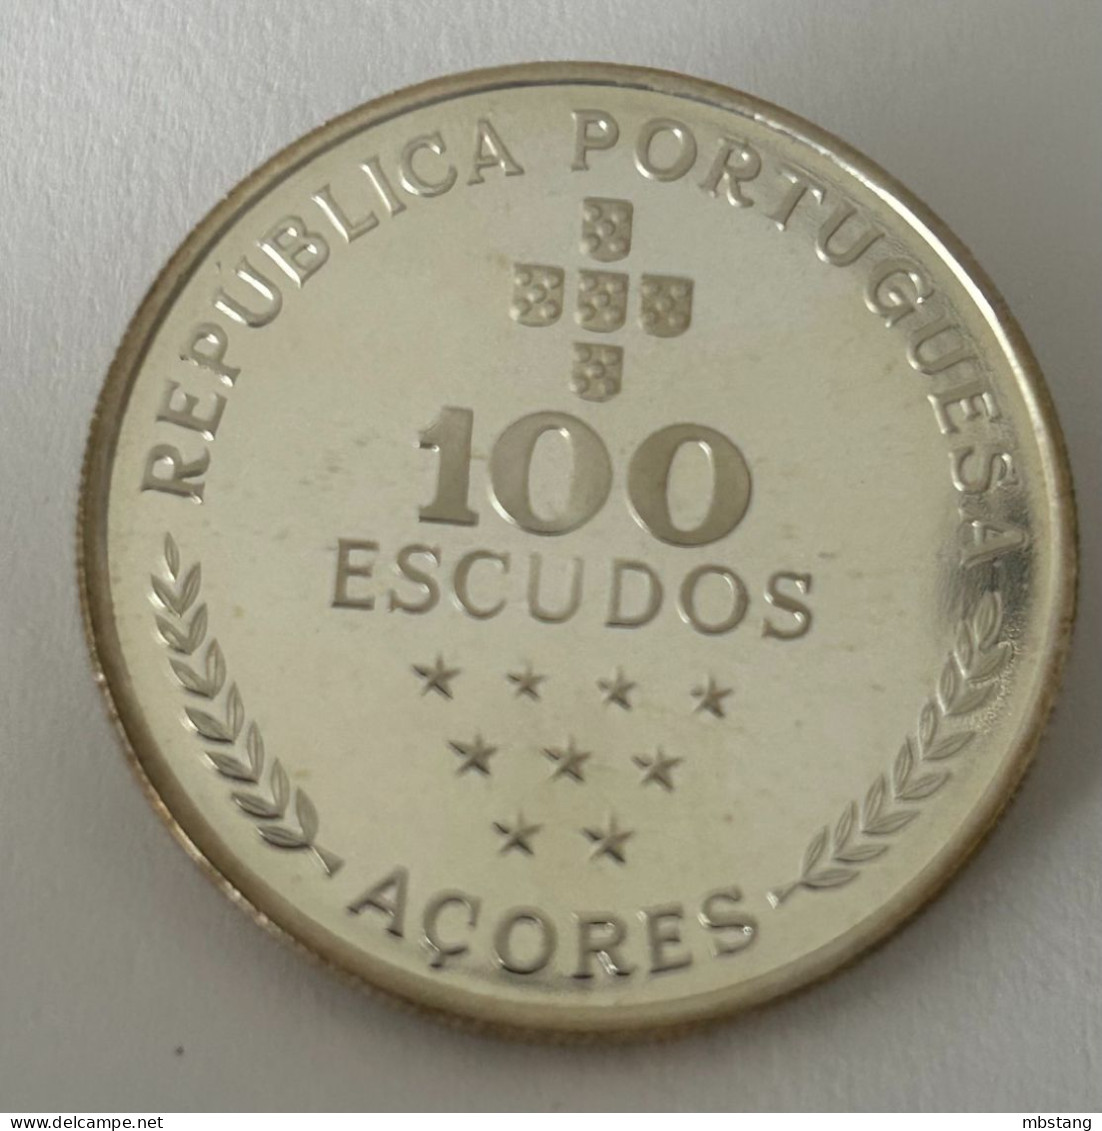 AZORES 100 Escudos (Azores Regional Autonomy; Silver) 1980 (.925) • 16.5 G •  34 Mm KM# 44a - Azores